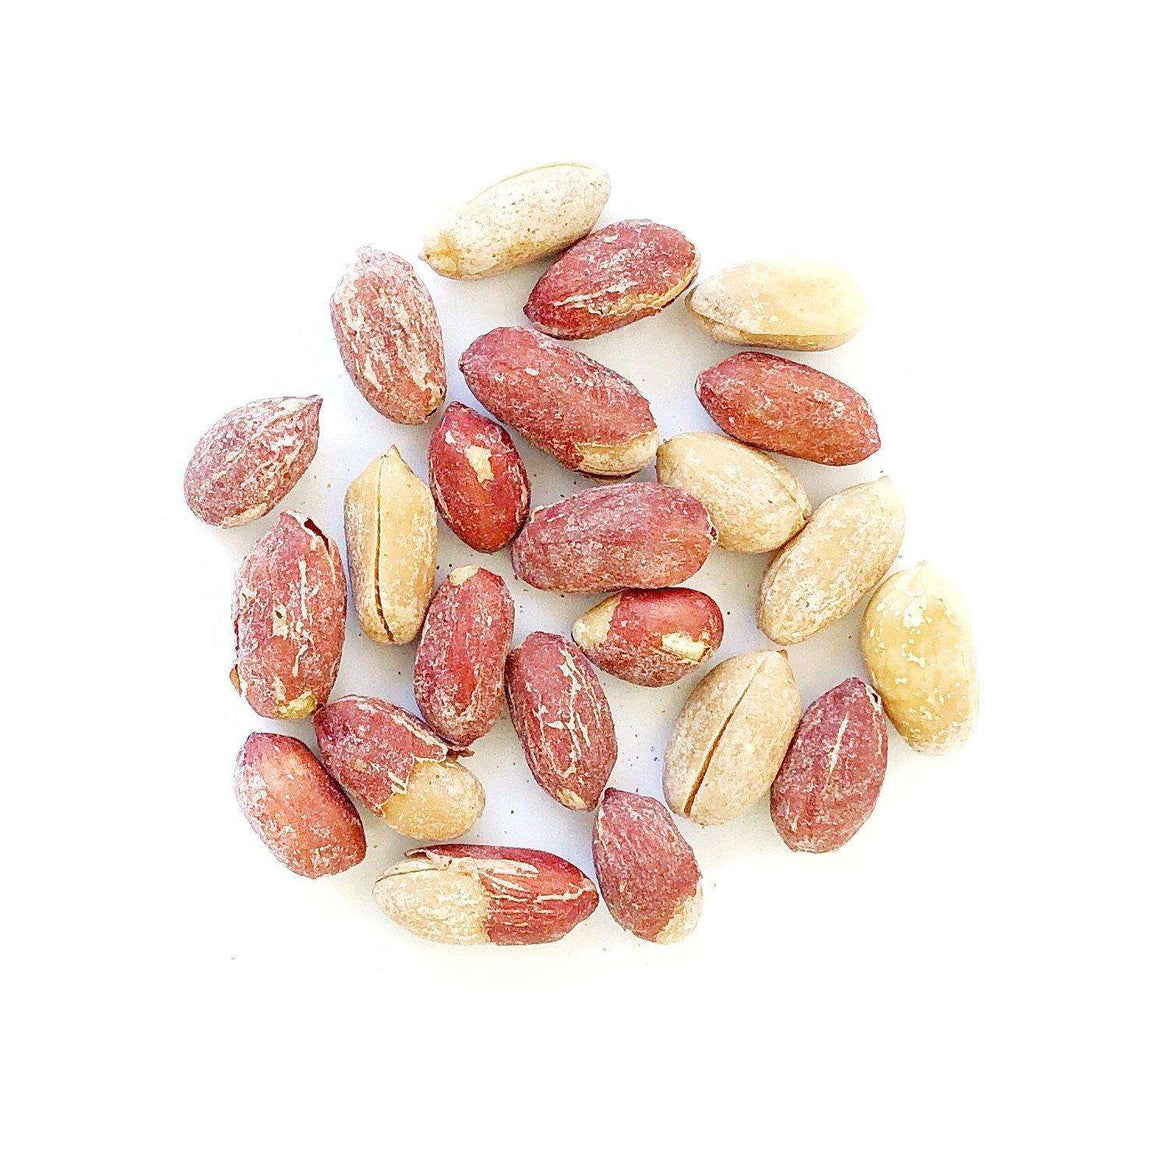 Roasted Salted Peanuts - Nuts Pick